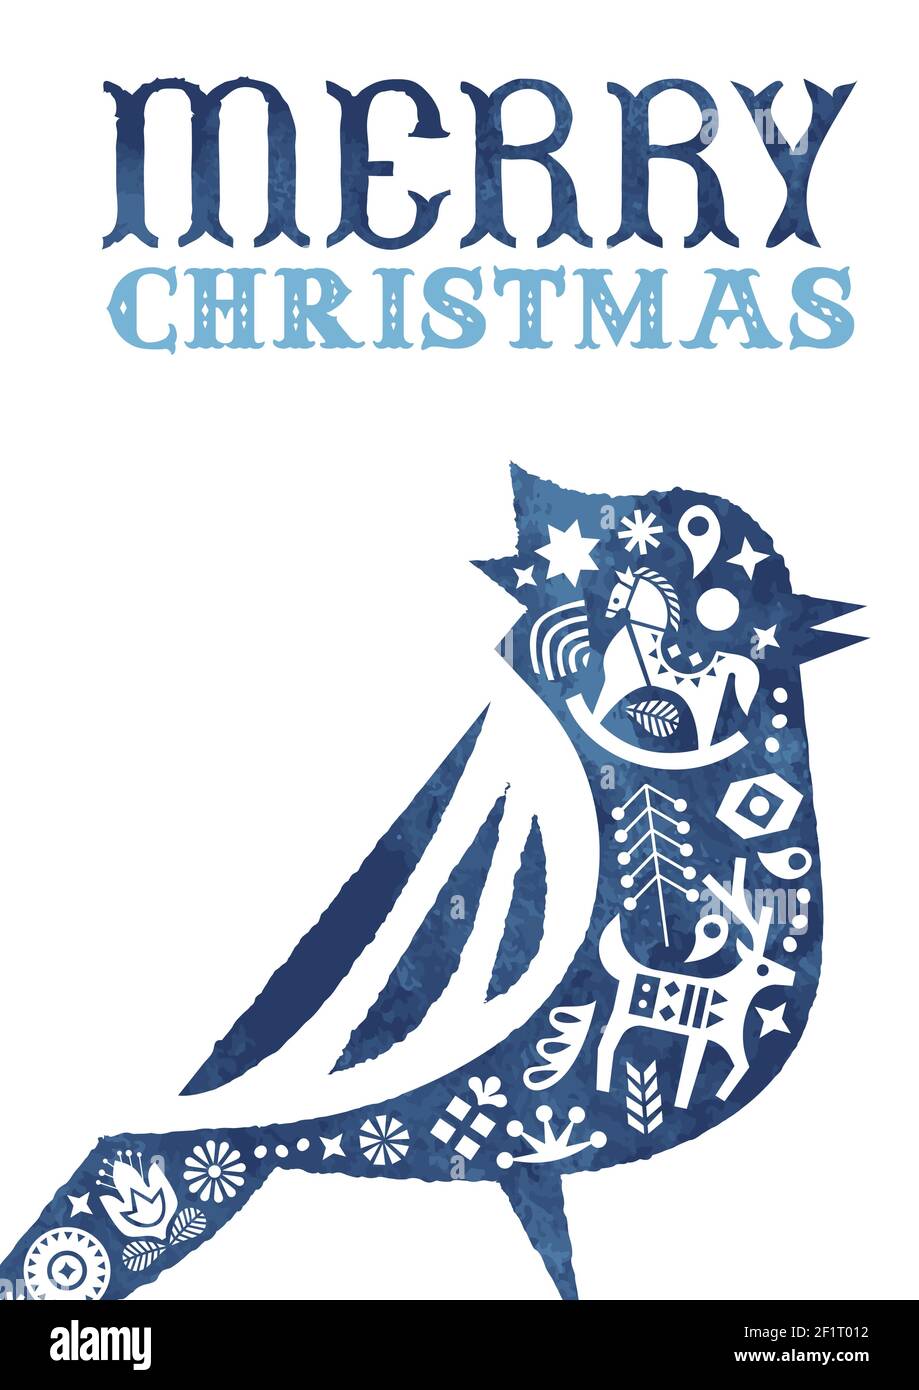 Frohe Weihnachten Grußkarte, vintage skandinavische Kunst Dekoration innen Aquarell Vogel Tier für Urlaub Einladung oder saisonale Grüße. Einschließen Stock Vektor